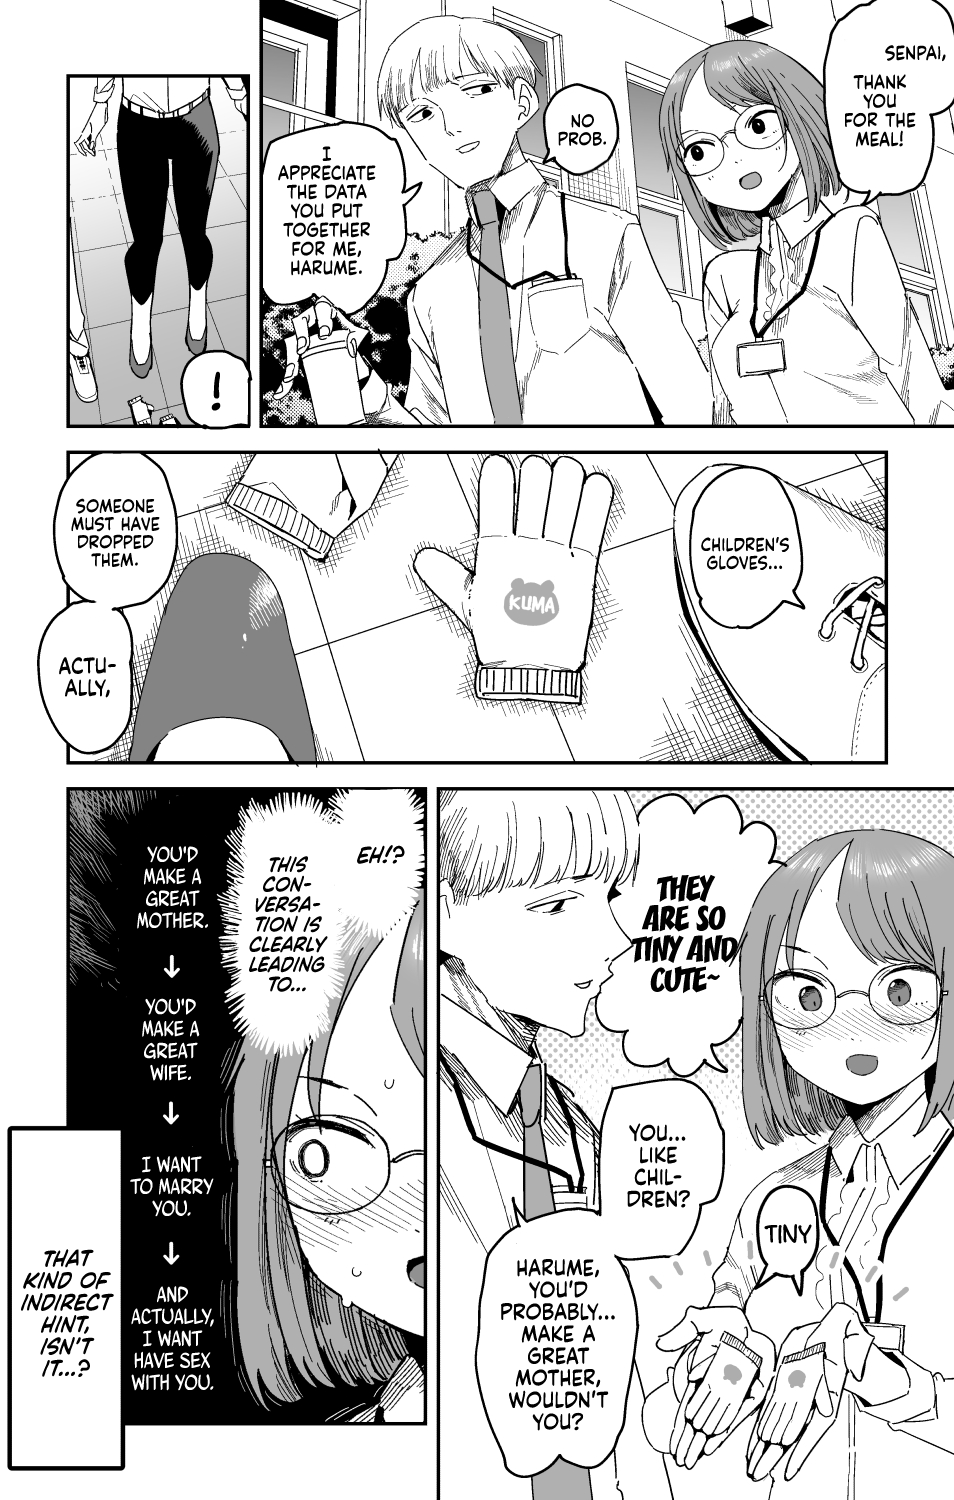 Harume-chan and Senpai manga